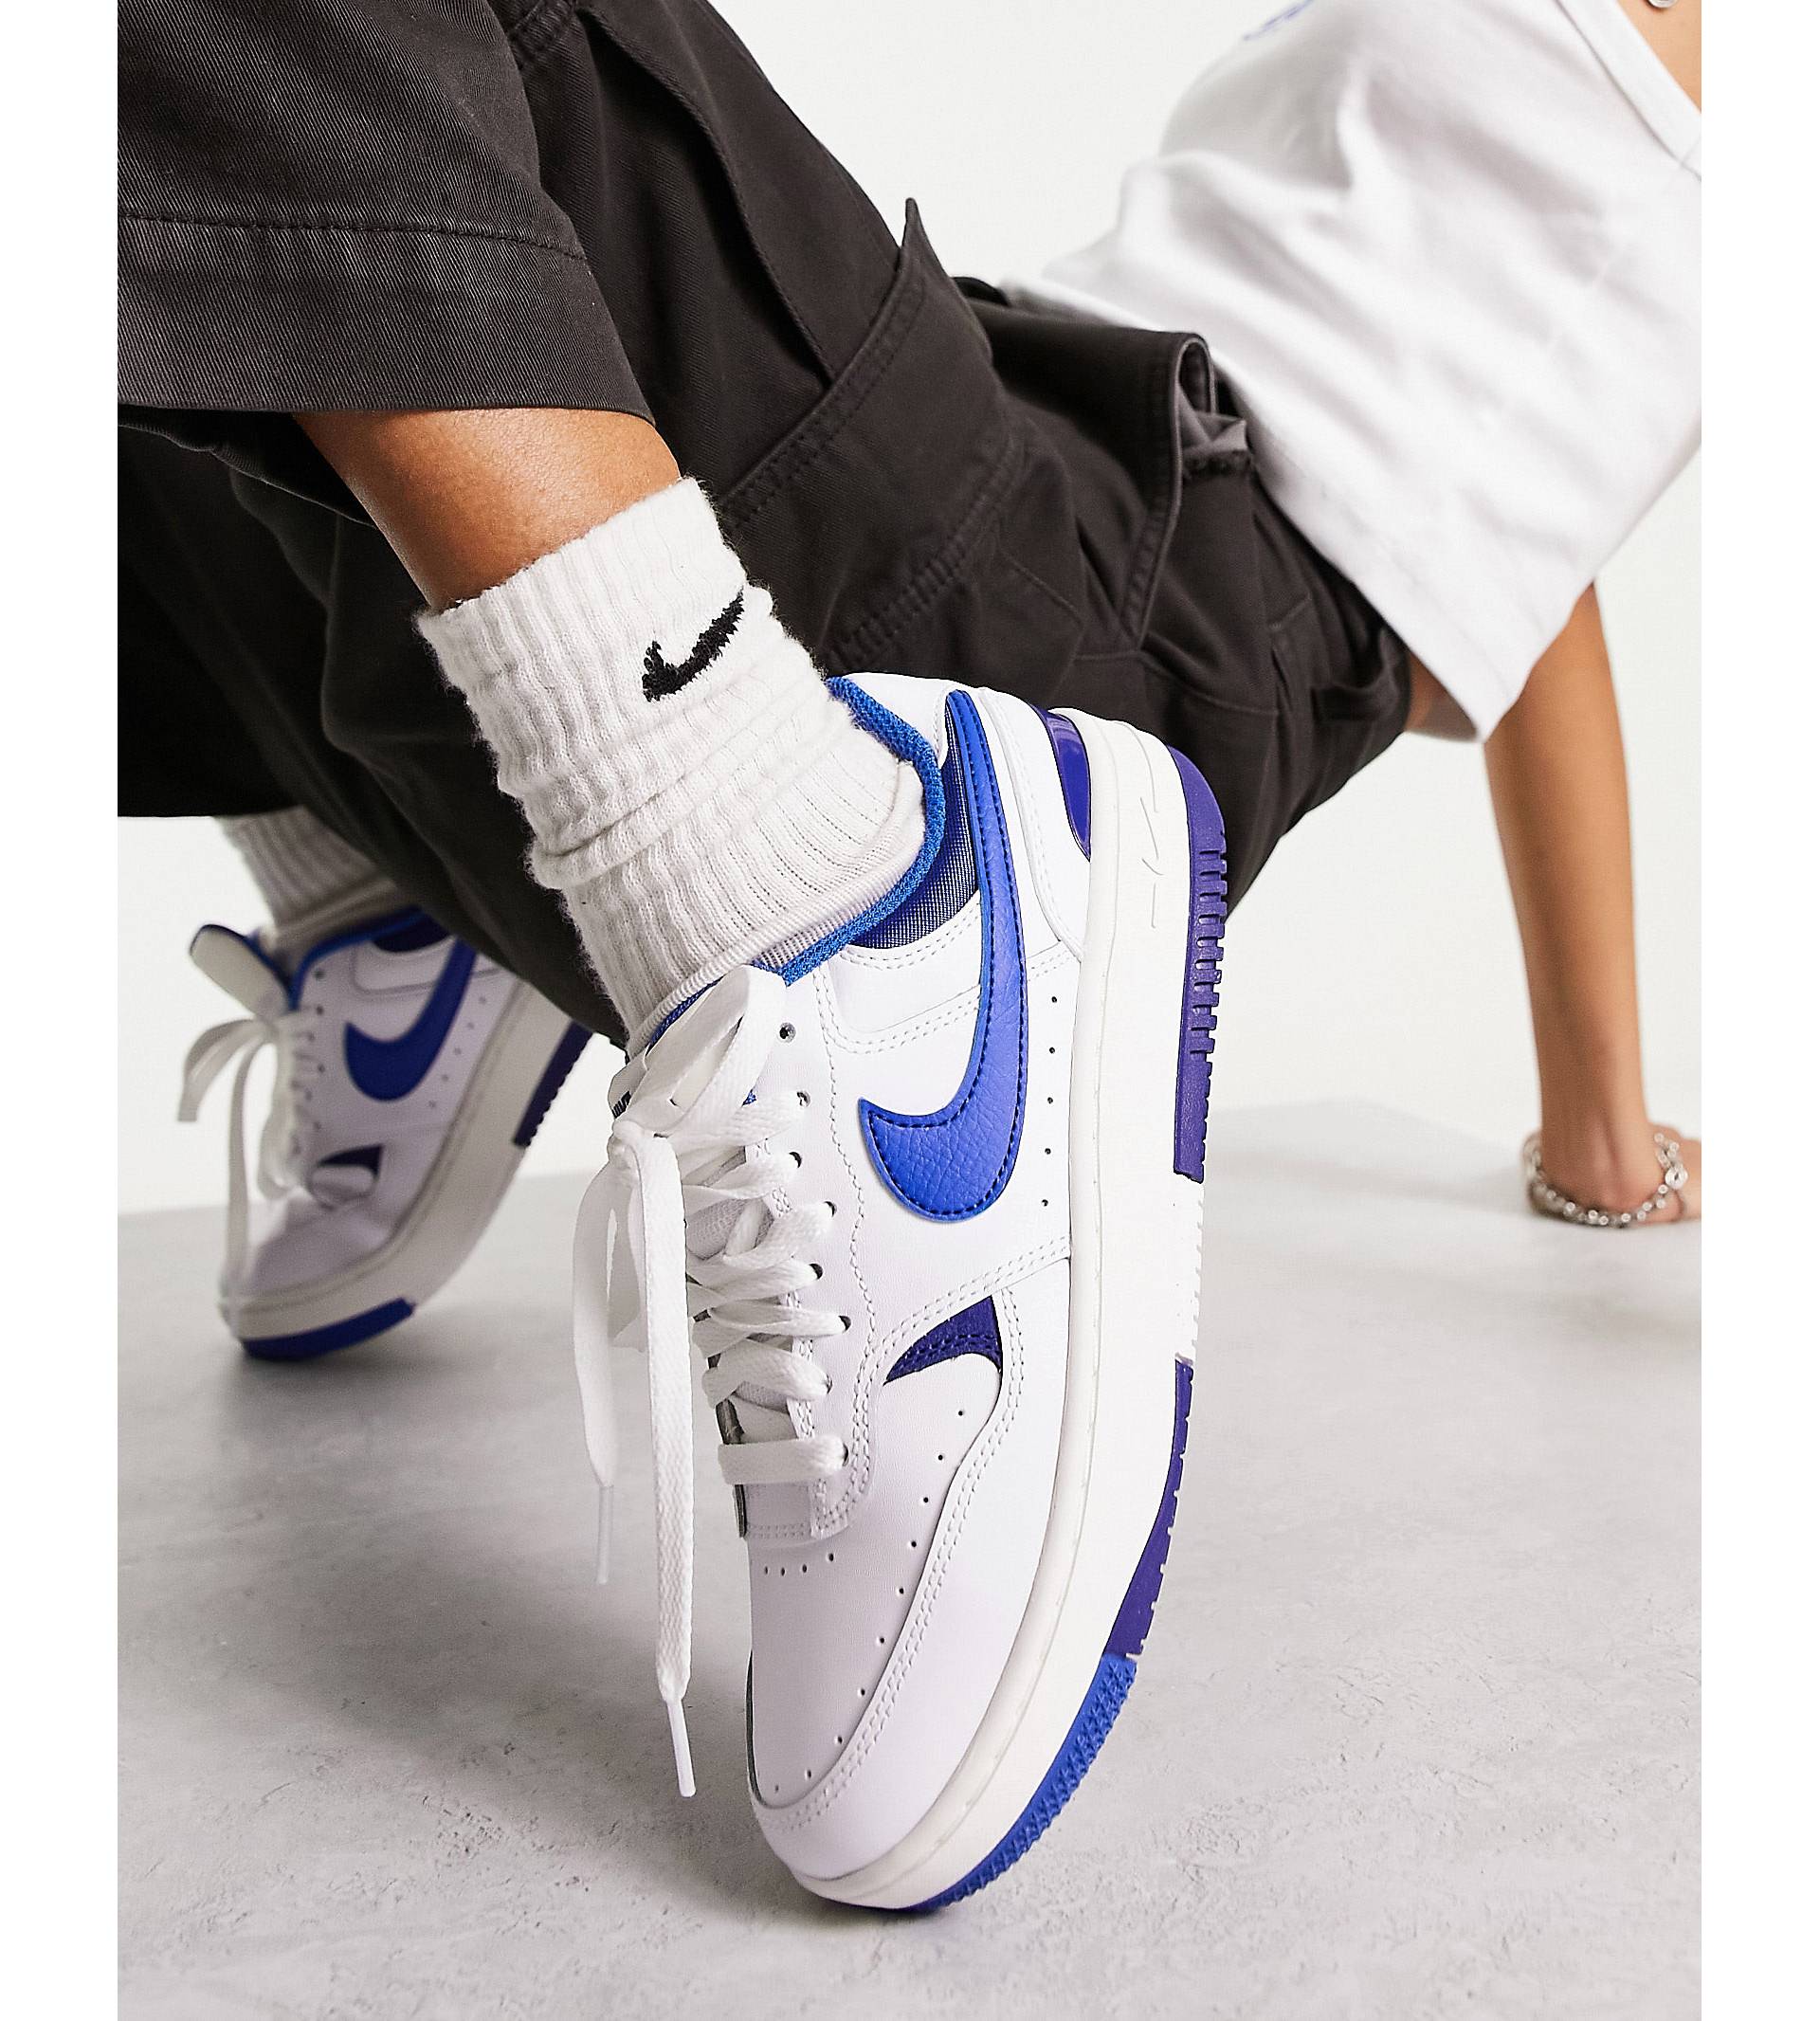 цена Кроссовки Nike Gamma Force белого и ярко-синего цвета